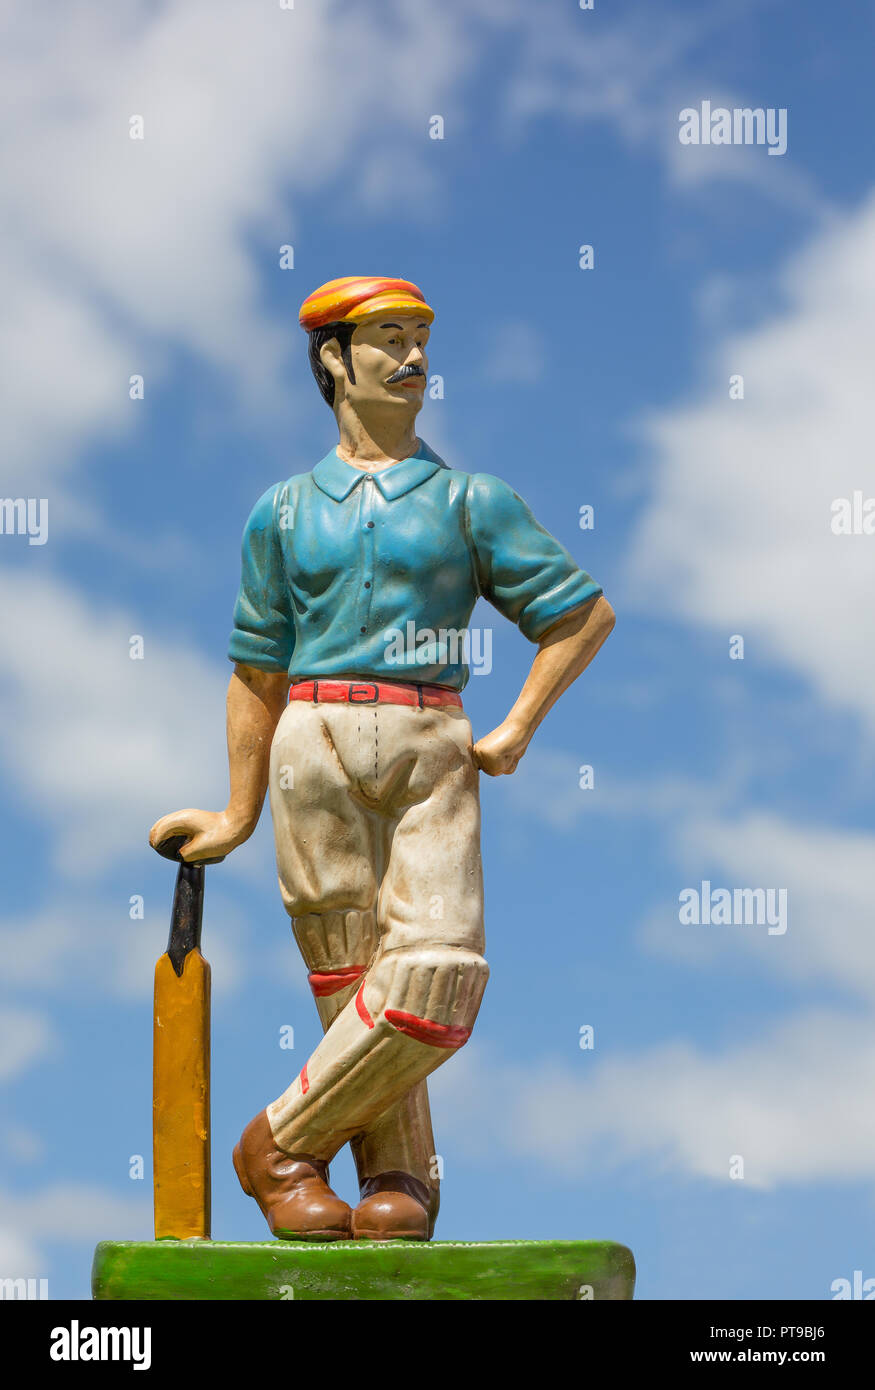 Detaillierte, portrait Nahaufnahme von Vintage cricketer Ornament gegen den blauen Himmel Hintergrund. Stockfoto